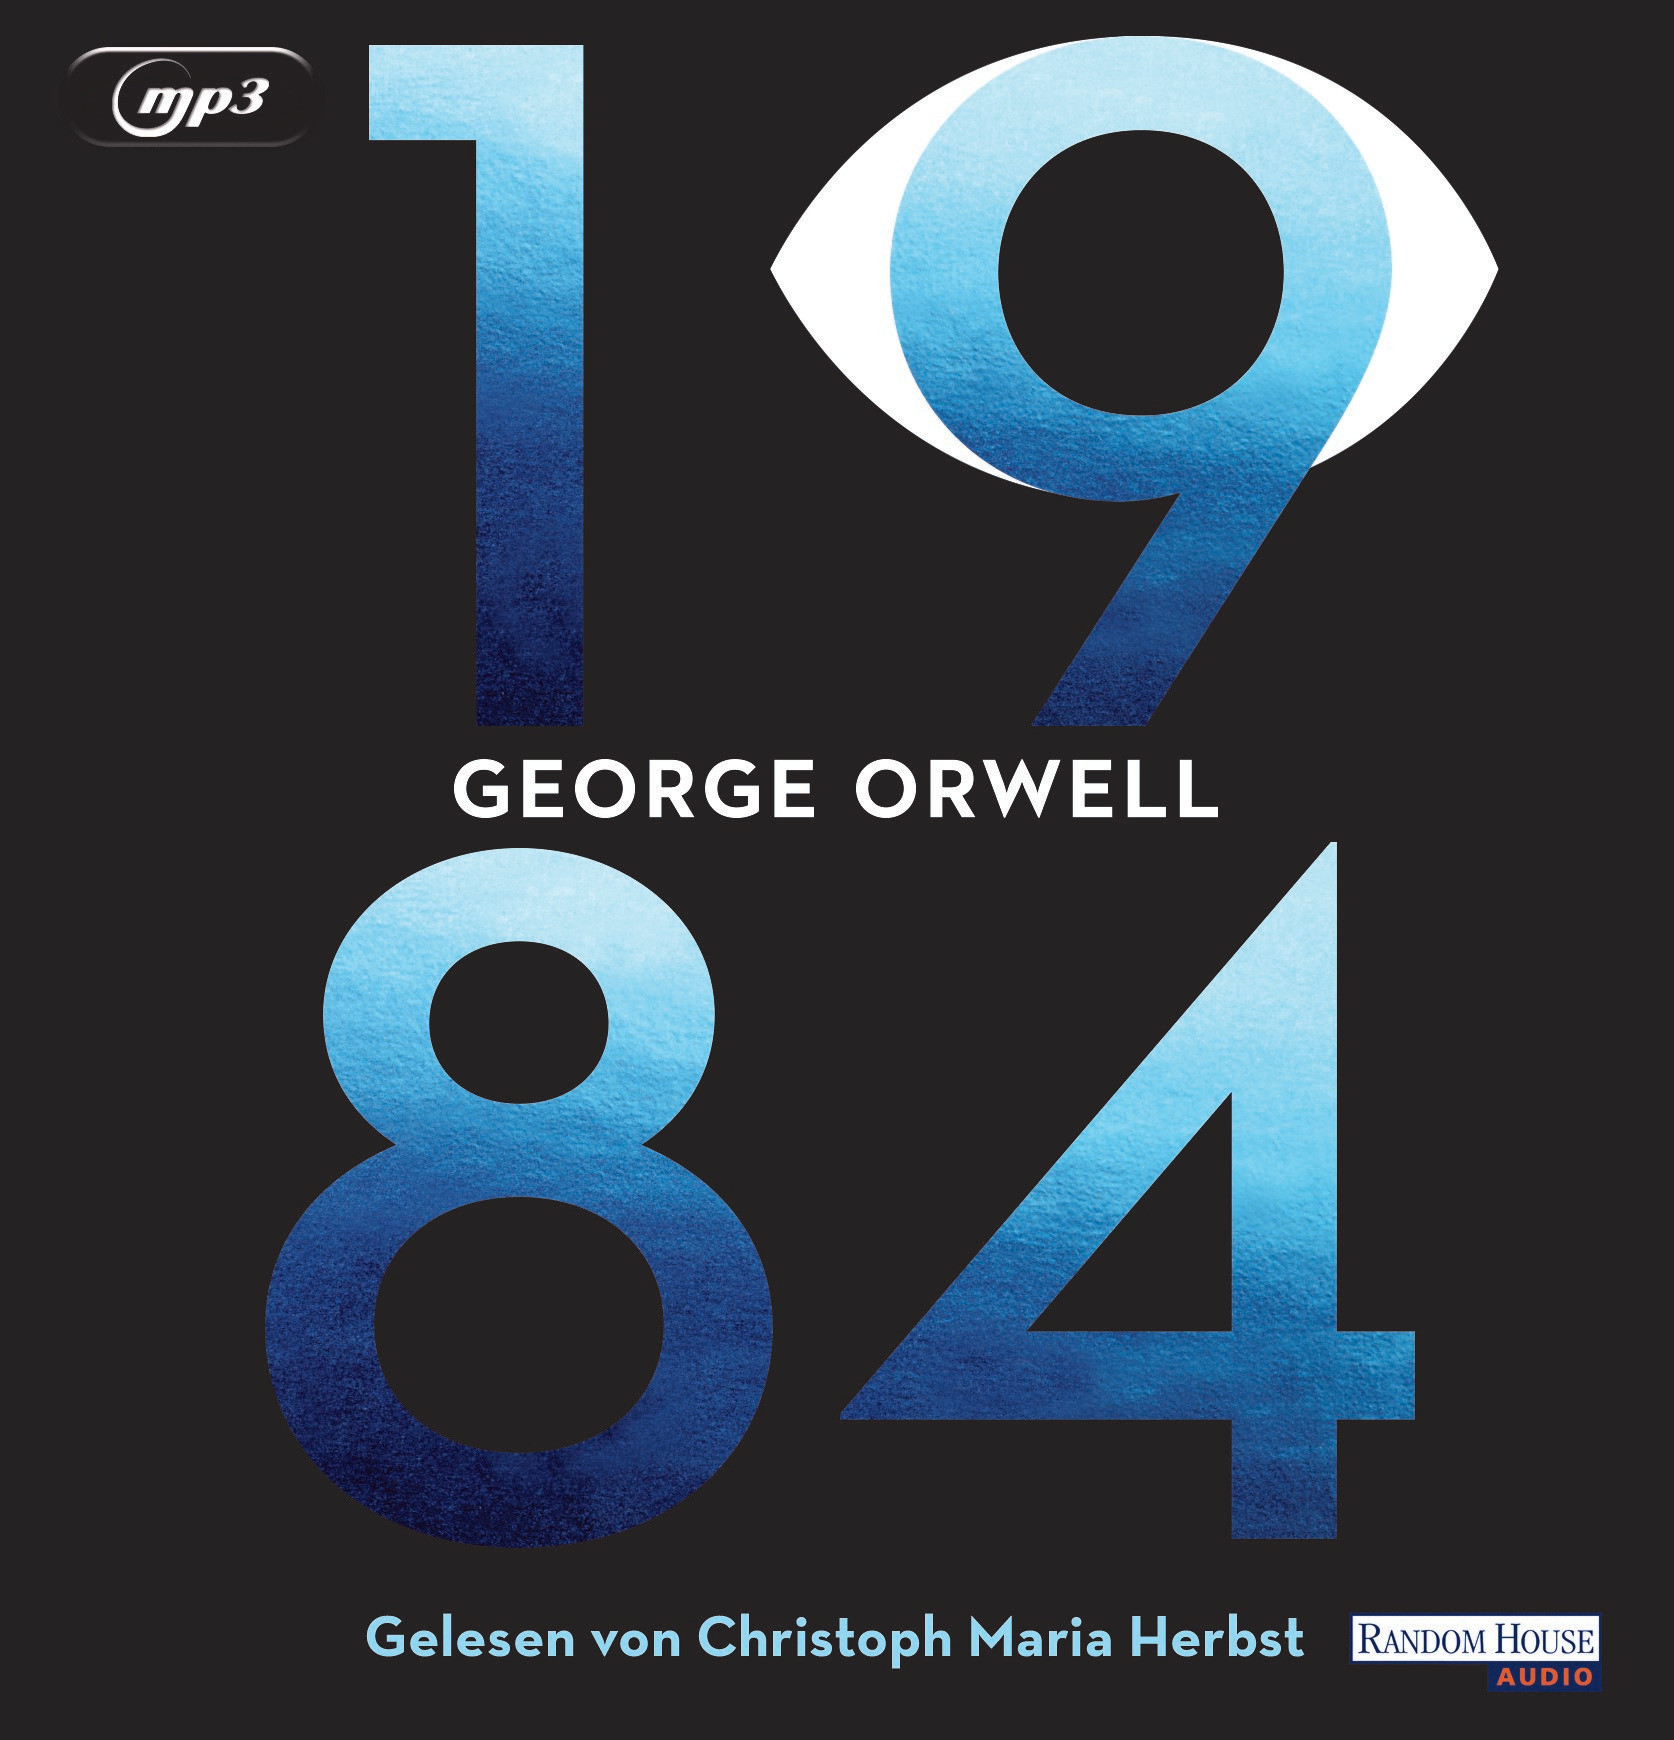 George Orwell - 1984 (Hörbuch)